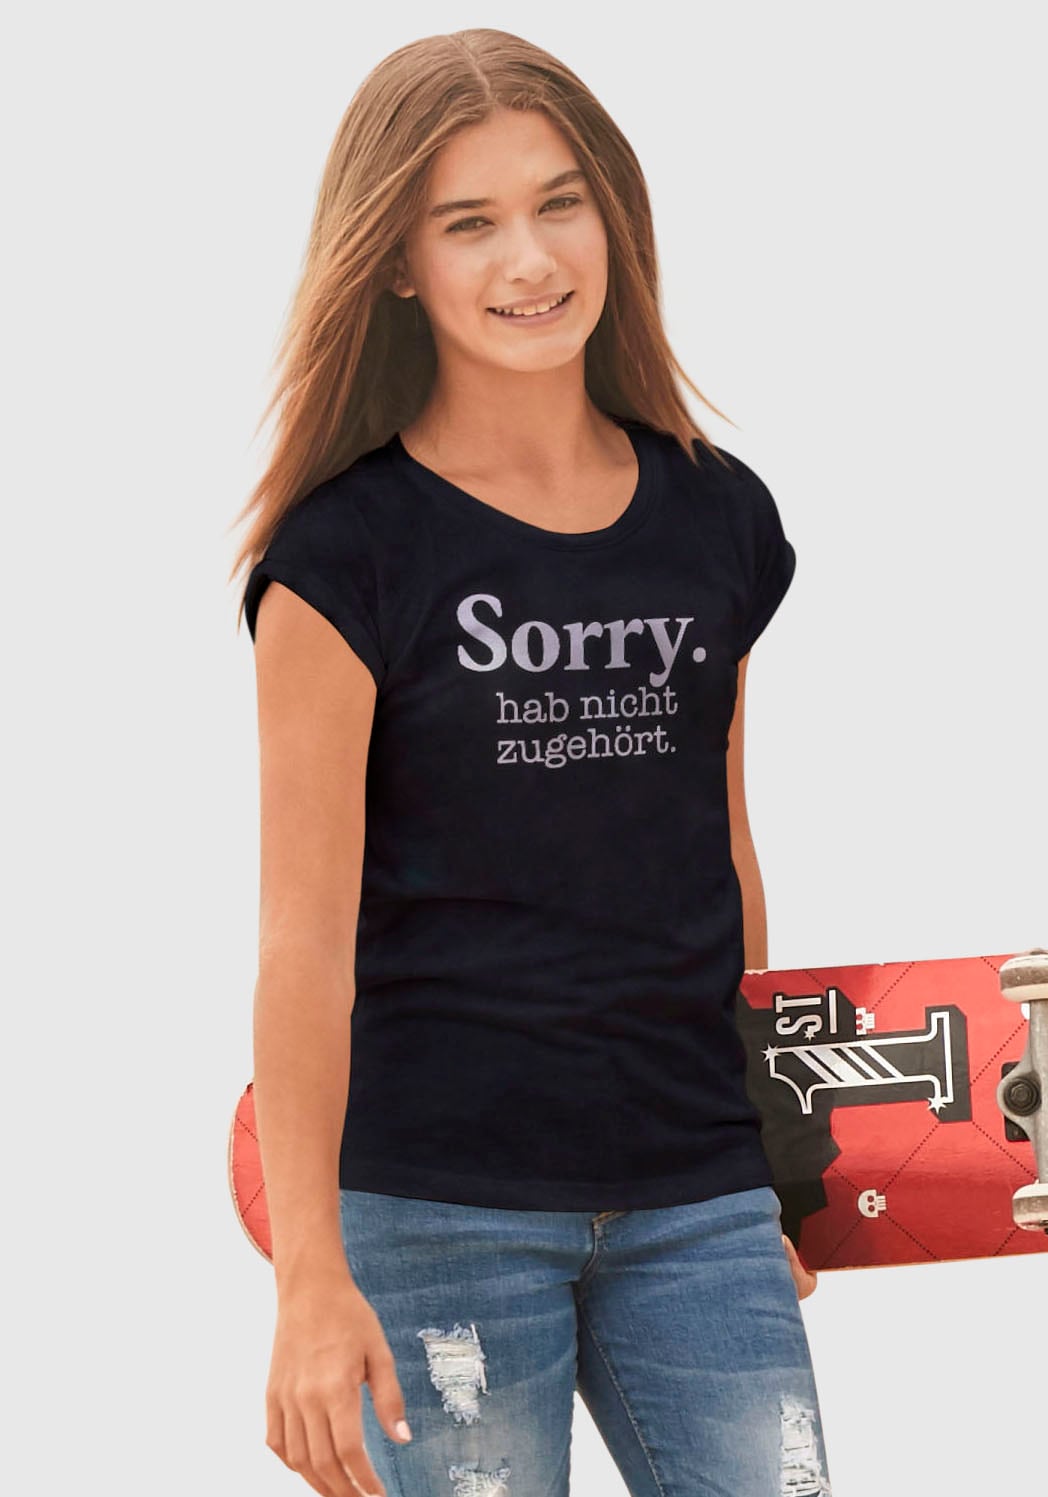 KIDSWORLD T-Shirt %Sale weiter in hab Form zugehört.«, legerer nicht im jetzt »Sorry